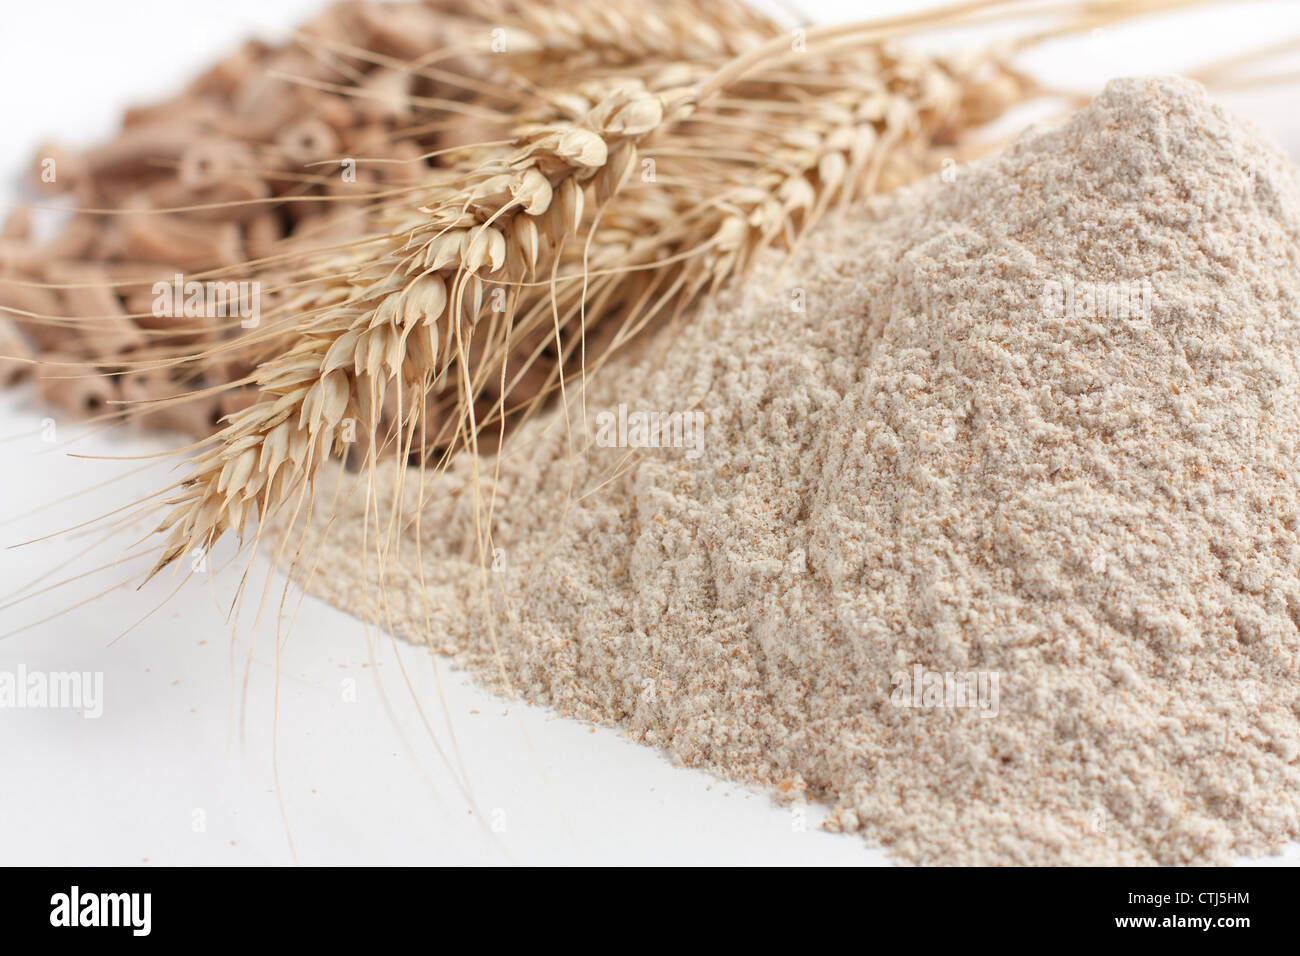 Pour la farine complète de froment, et des épis de blé, gros plan Banque D'Images